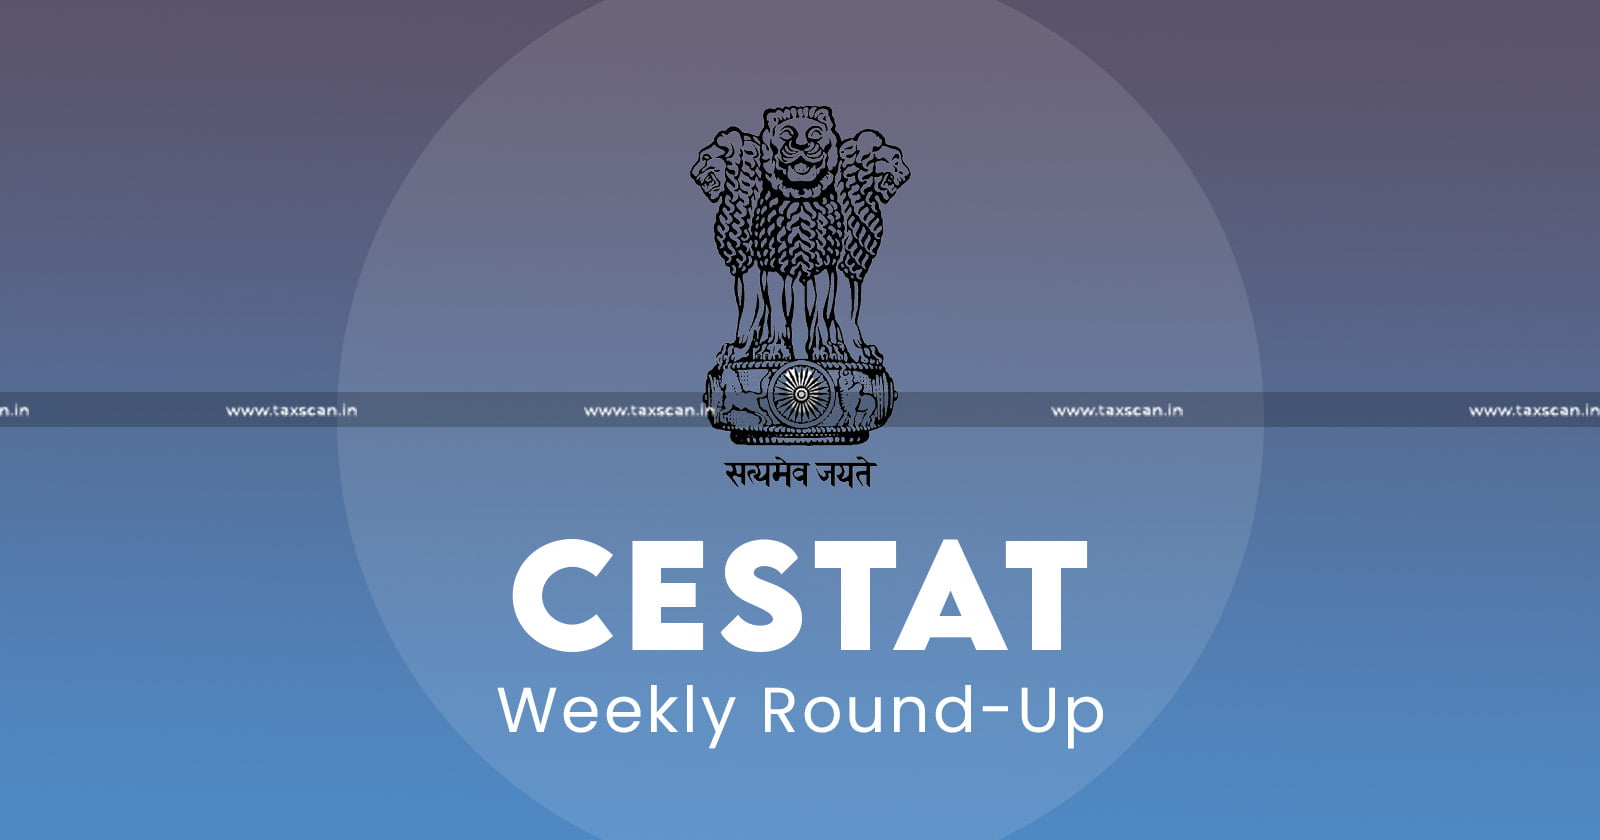 CESTAT - Weekly Round-Up - CESTAT Weekly Round-Up - taxscan